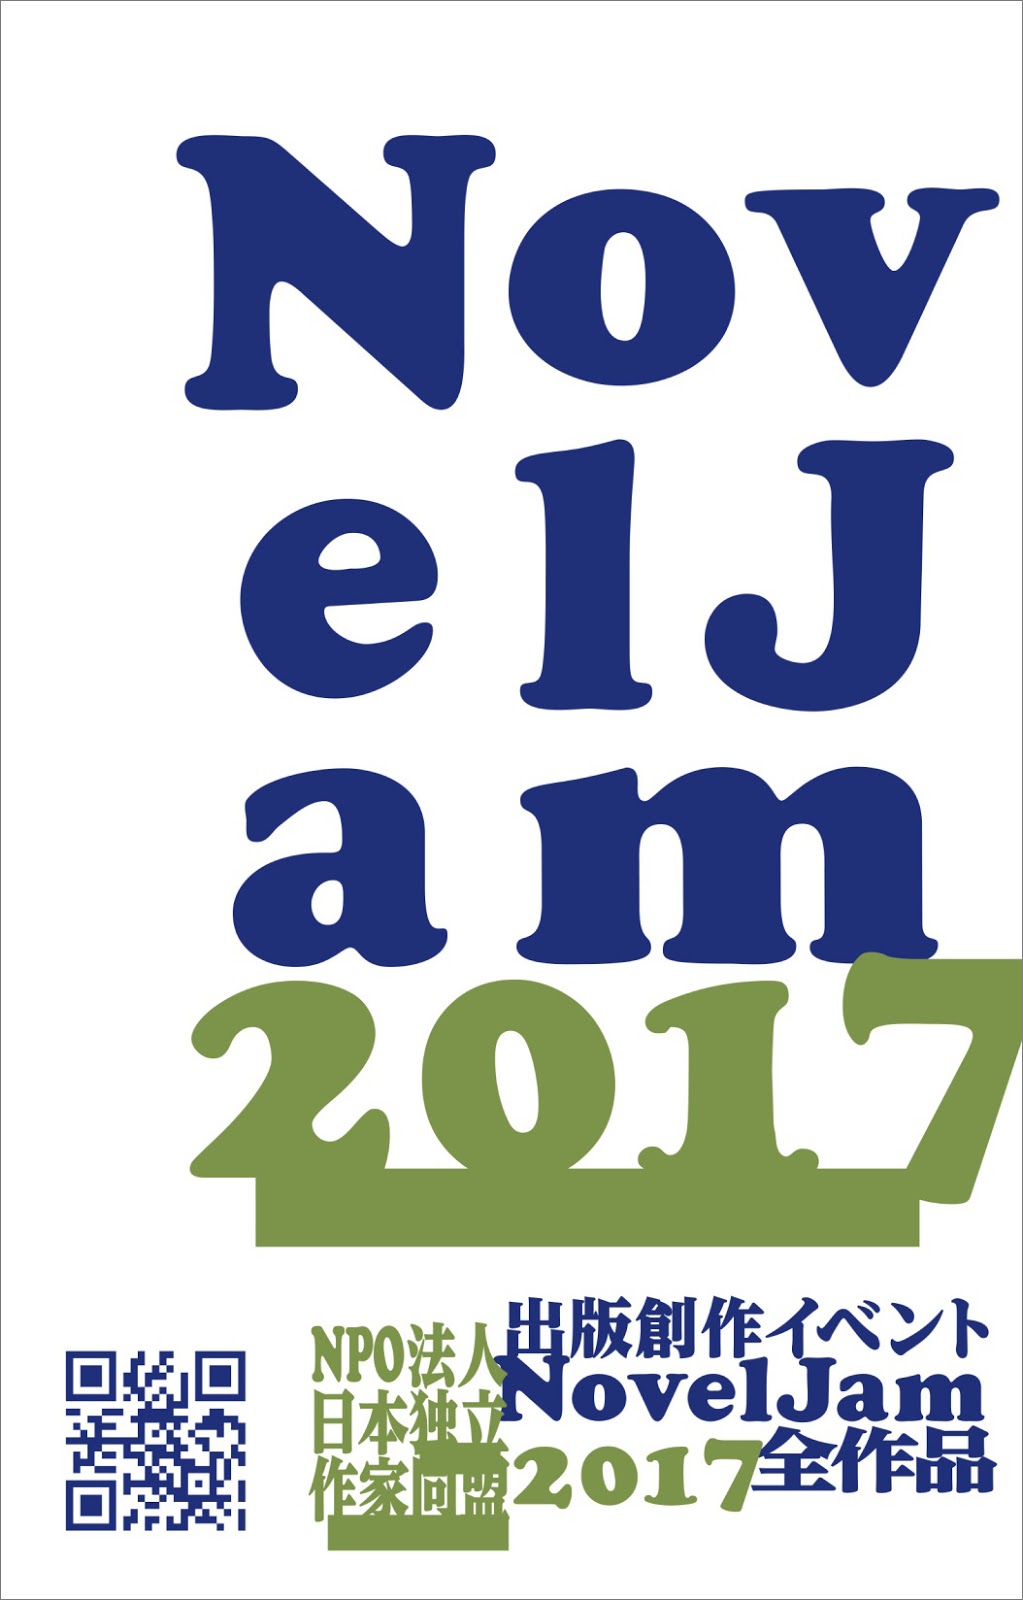 『出版創作イベント「NovelJam 2017」全作品』